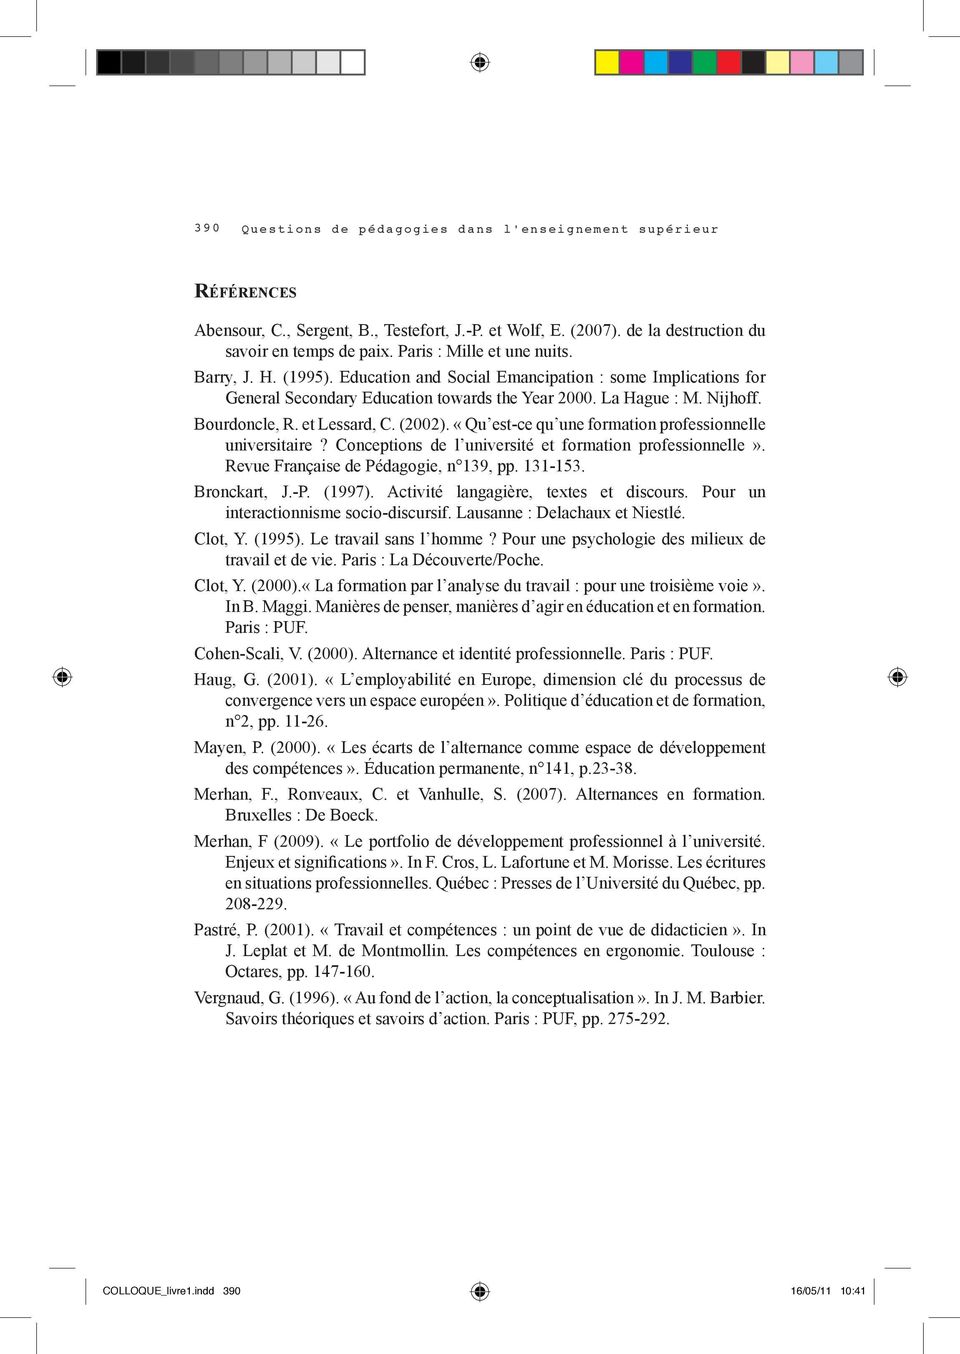 et Lessard, C. (2002). «Qu est-ce qu une formation professionnelle universitaire? Conceptions de l université et formation professionnelle». Revue Française de Pédagogie, n 139, pp. 131-153.